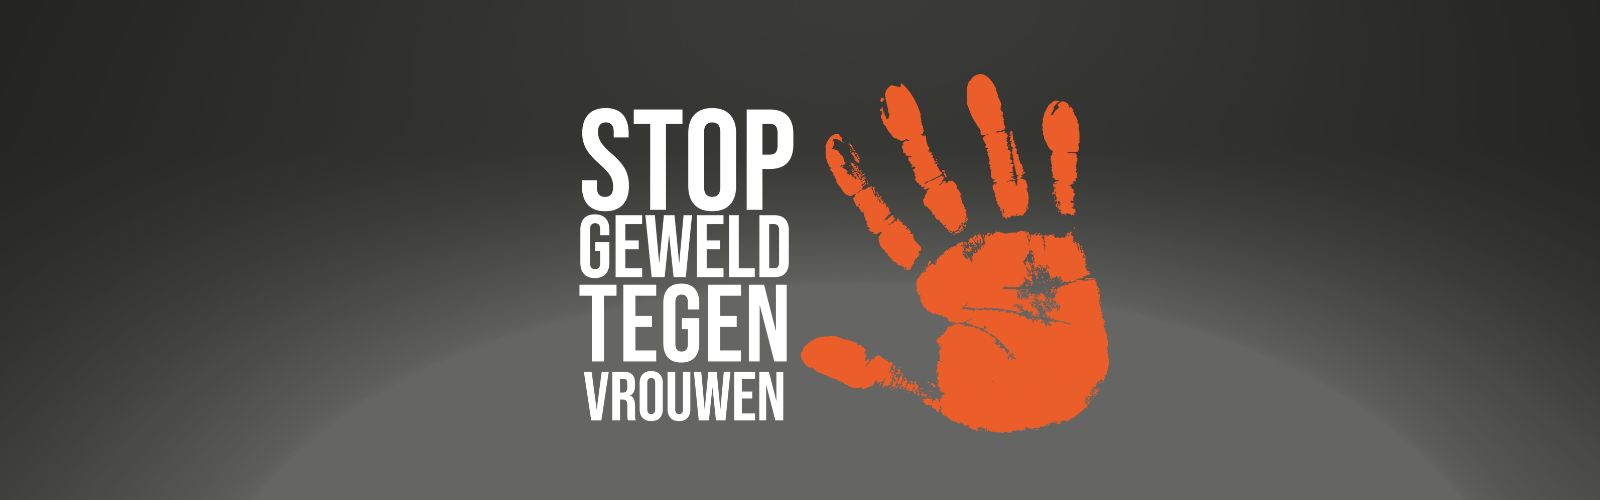 Zwarte-grijze achtergrond met daarvoor witte tekst: stop geweld tegen vrouwen. Rechts daarvan een oranje handafsdruk.